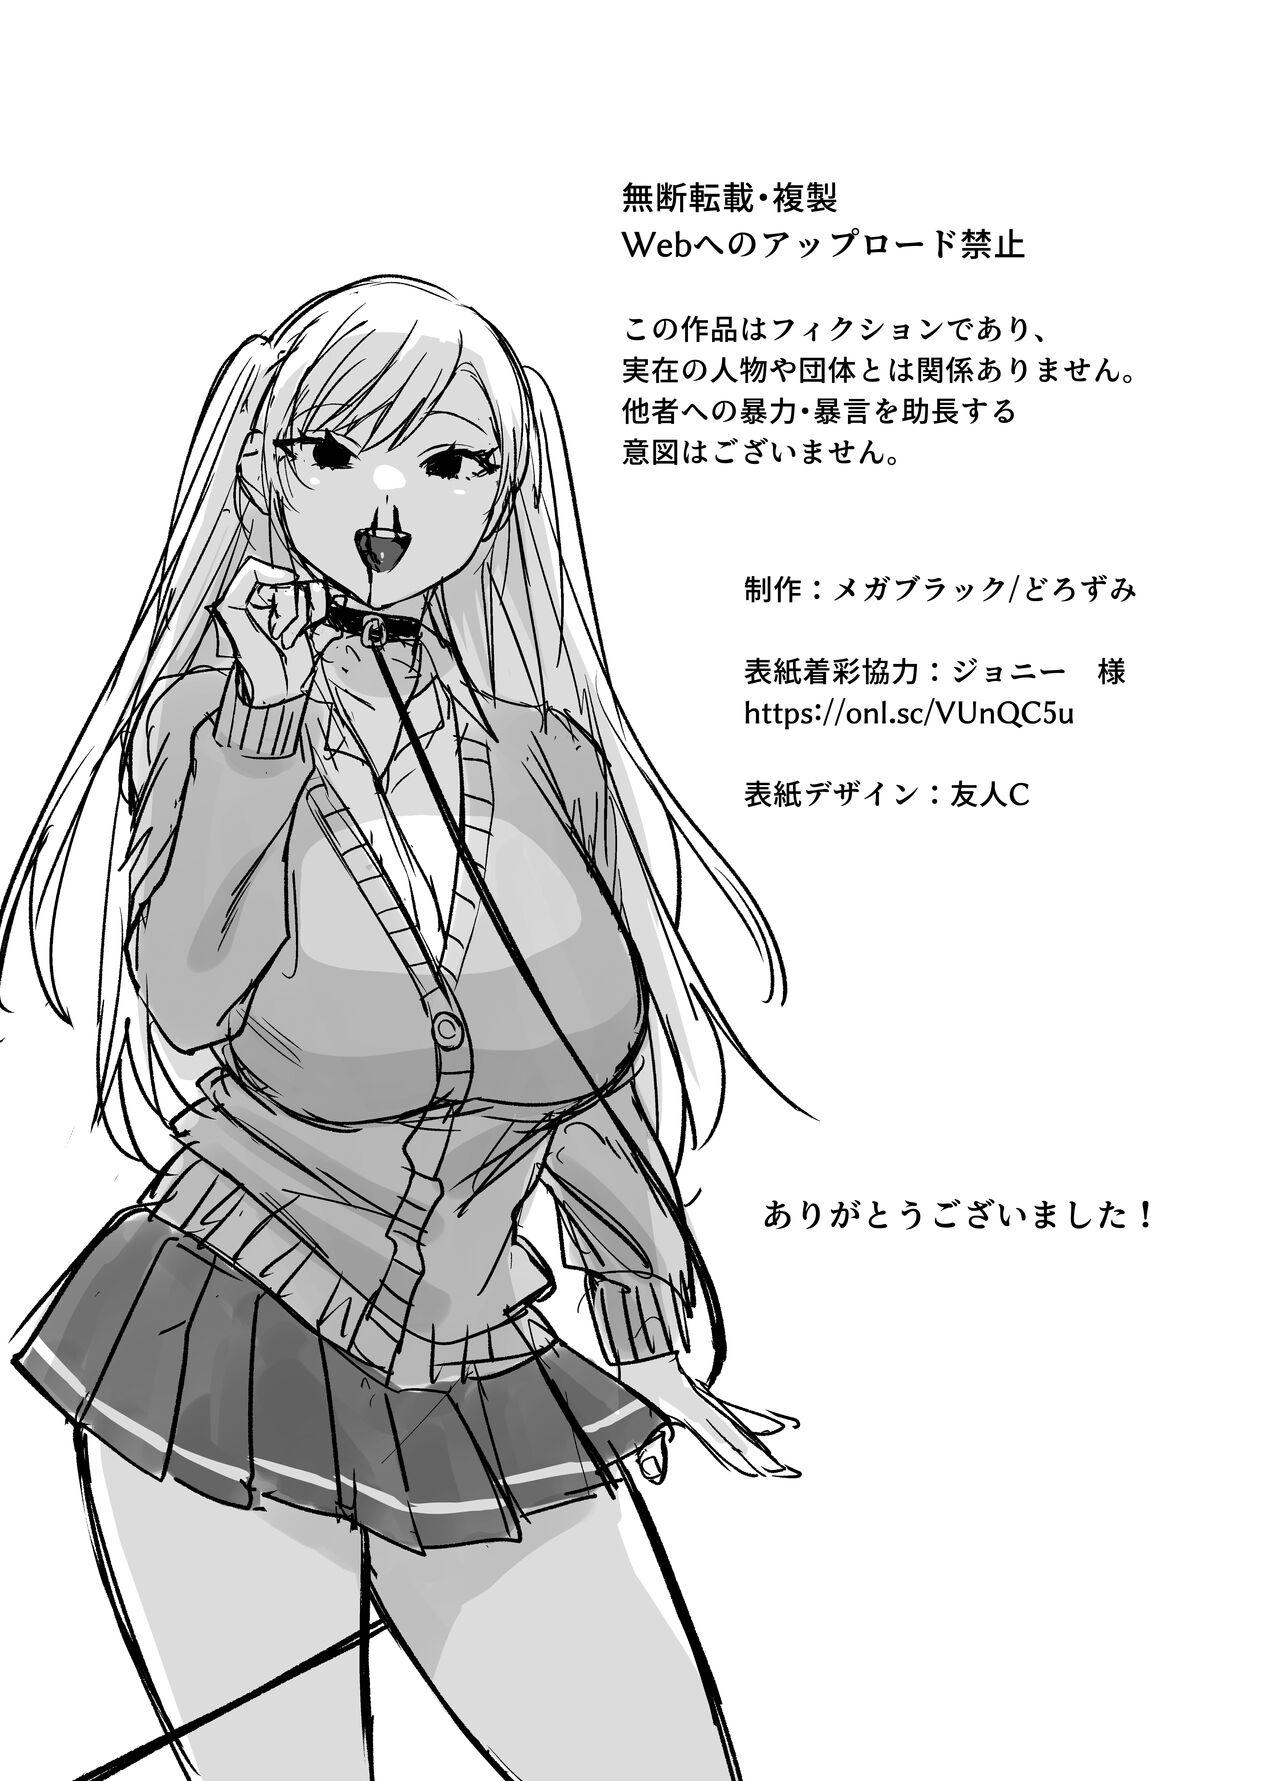 Tsundere Bouryoku Heroine o  Shin no Bouryoku de Wakaraseru ! |  讓傲嬌女主角明白什么才叫做真正的暴力 ！ 40